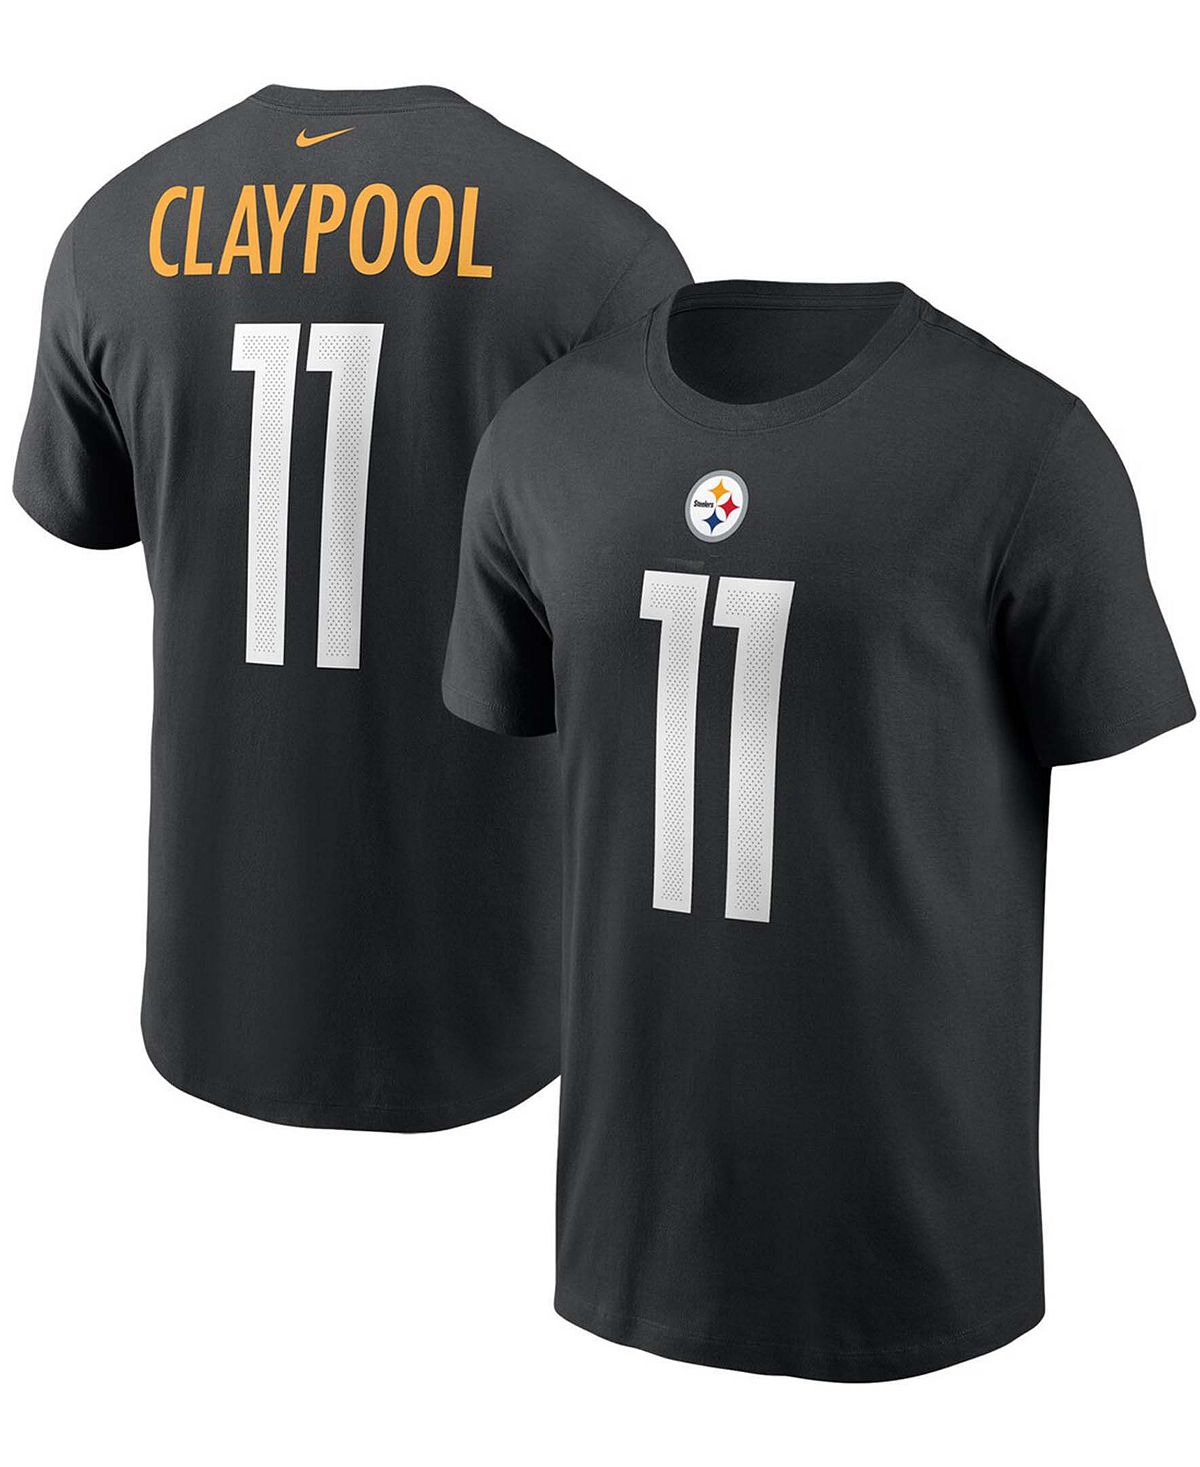 Мужская черная футболка Chase Claypool Pittsburgh Steelers с именем и номером Nike